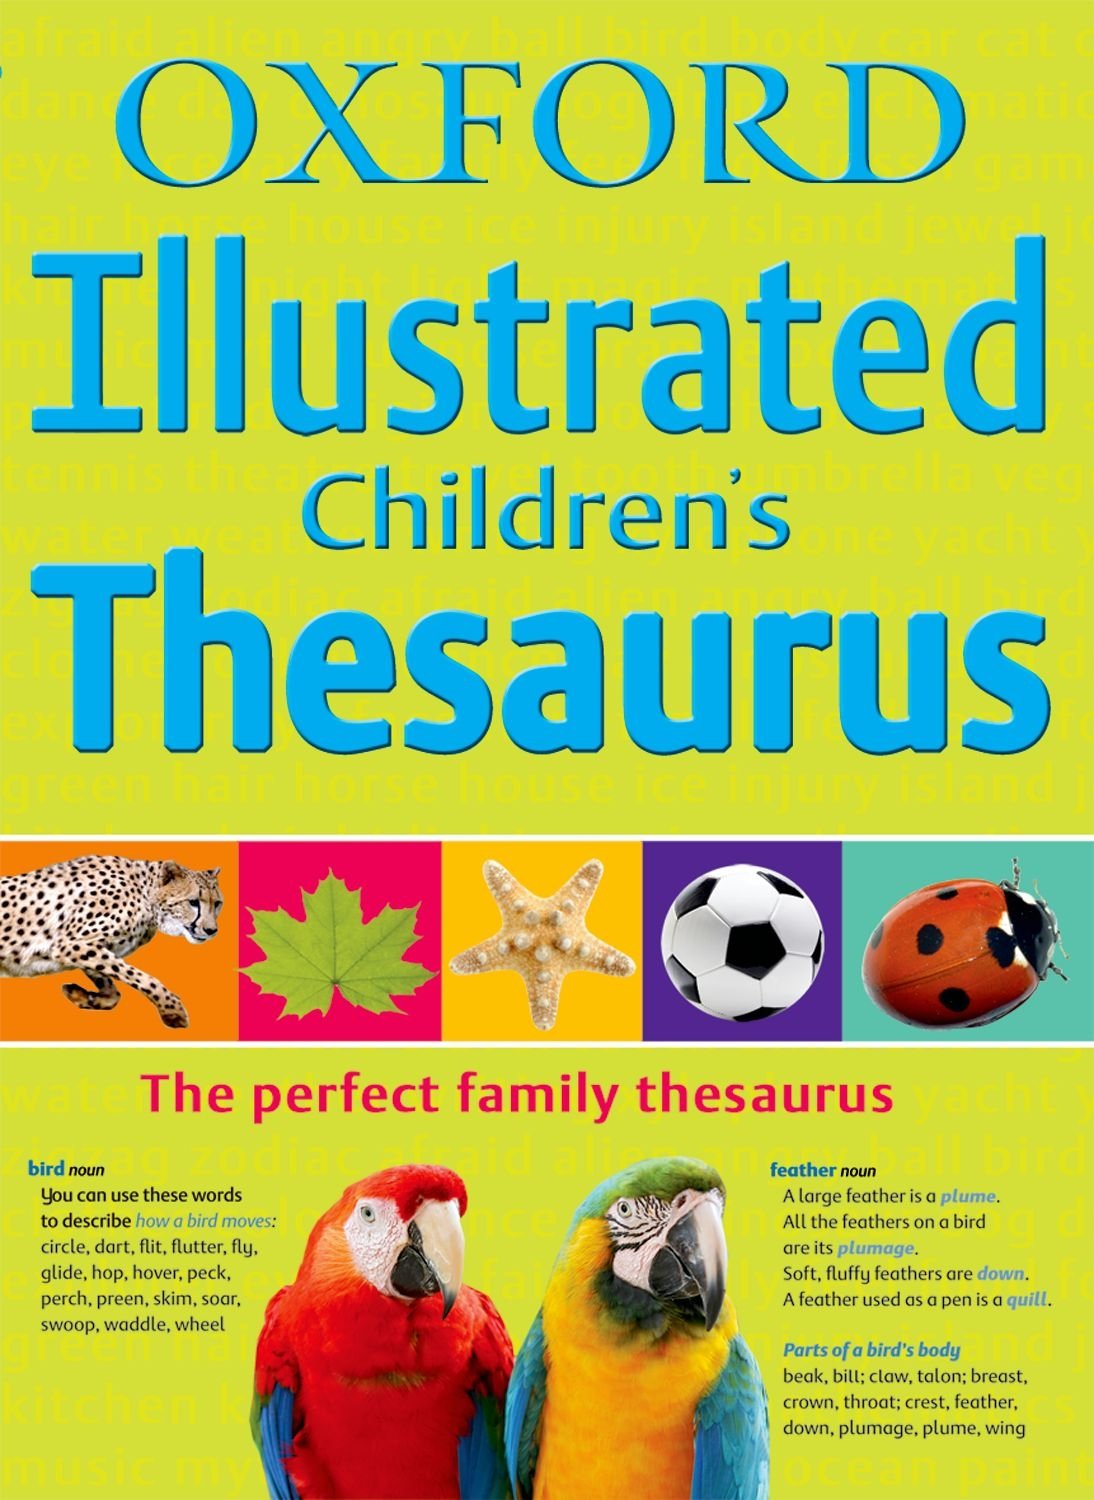 thesaurus-802890-uluda-s-zl-k-galeri